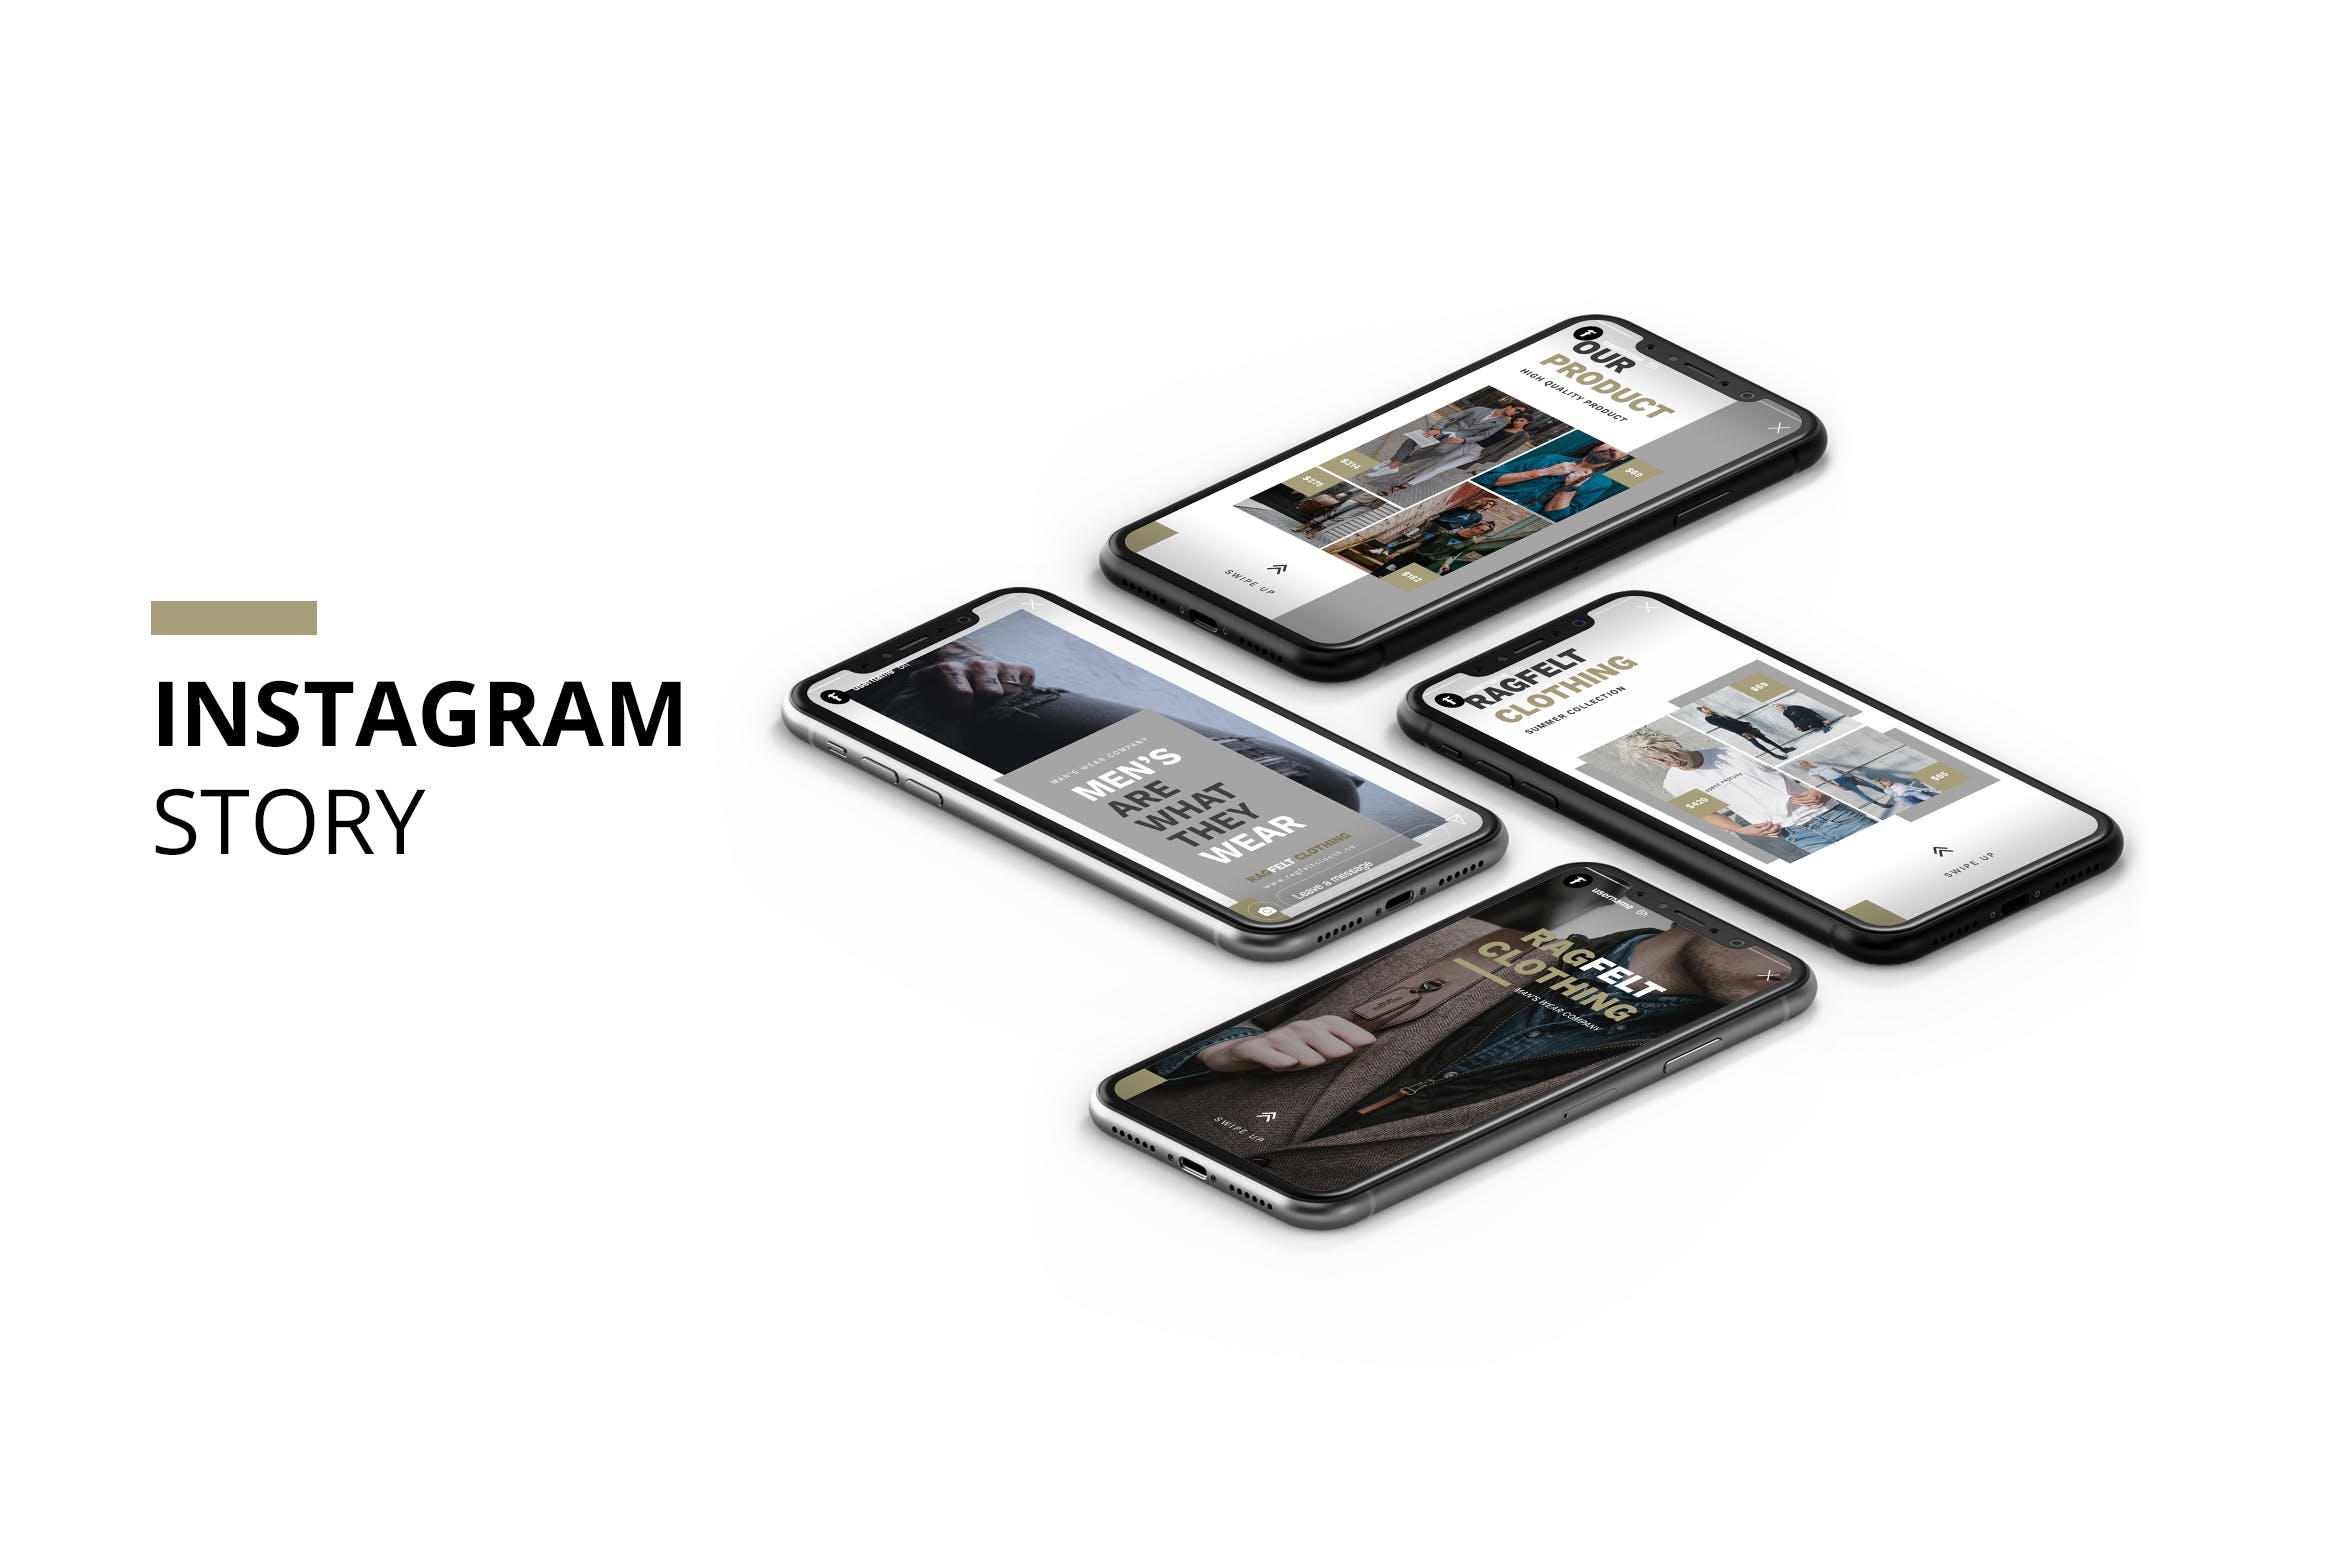 时尚男装推广Instagram品牌故事设计模板第一素材精选 Ragfelt Man Fashion Instagram Story插图